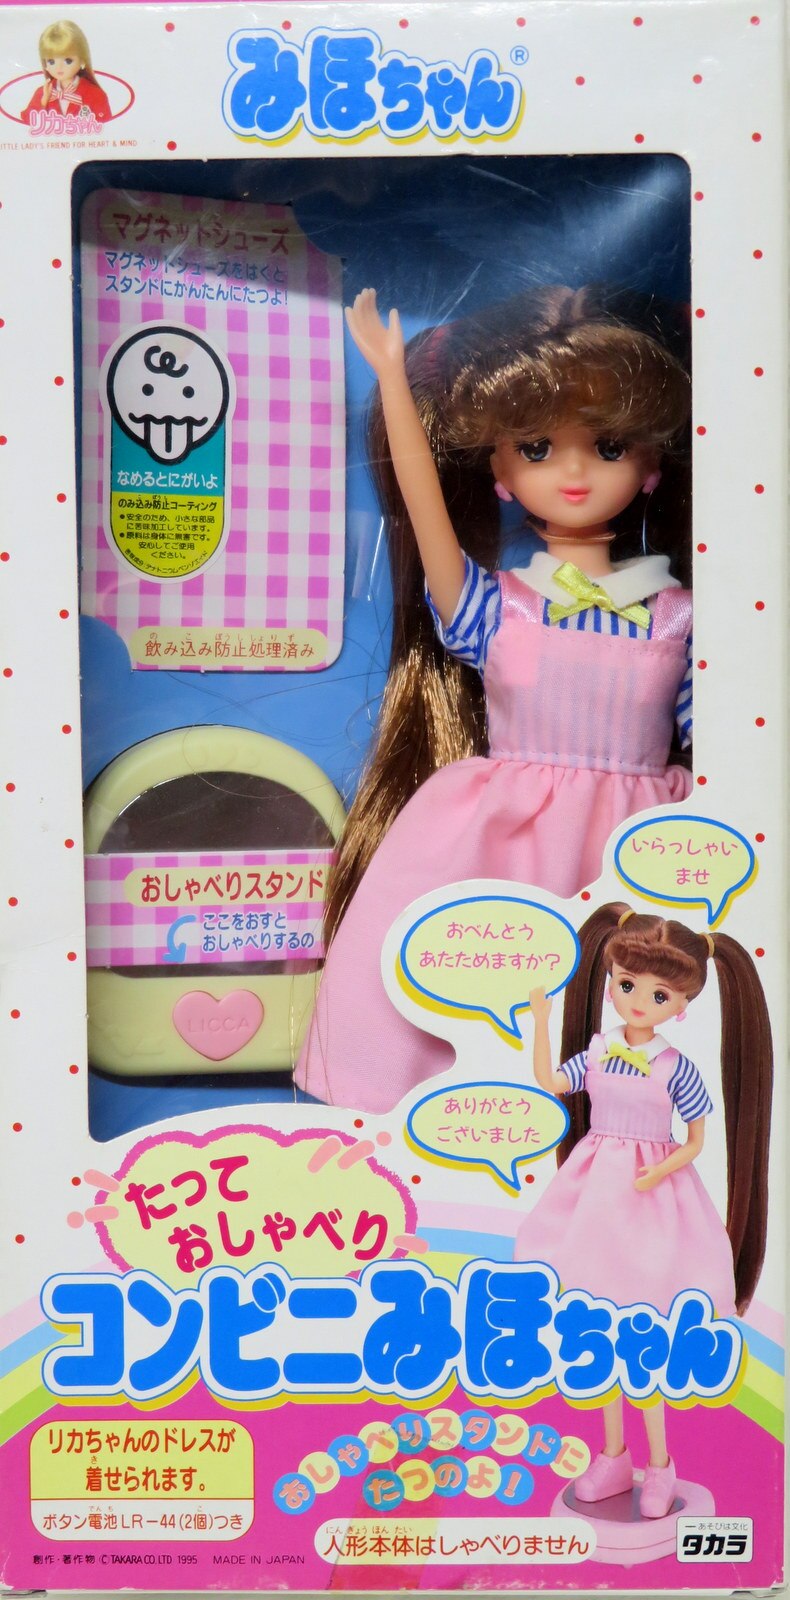 【再入荷人気】リカちゃん人形 その他人形 まとめ リカちゃんコンビニ 洋服多数 小物 ジャンク品 人形